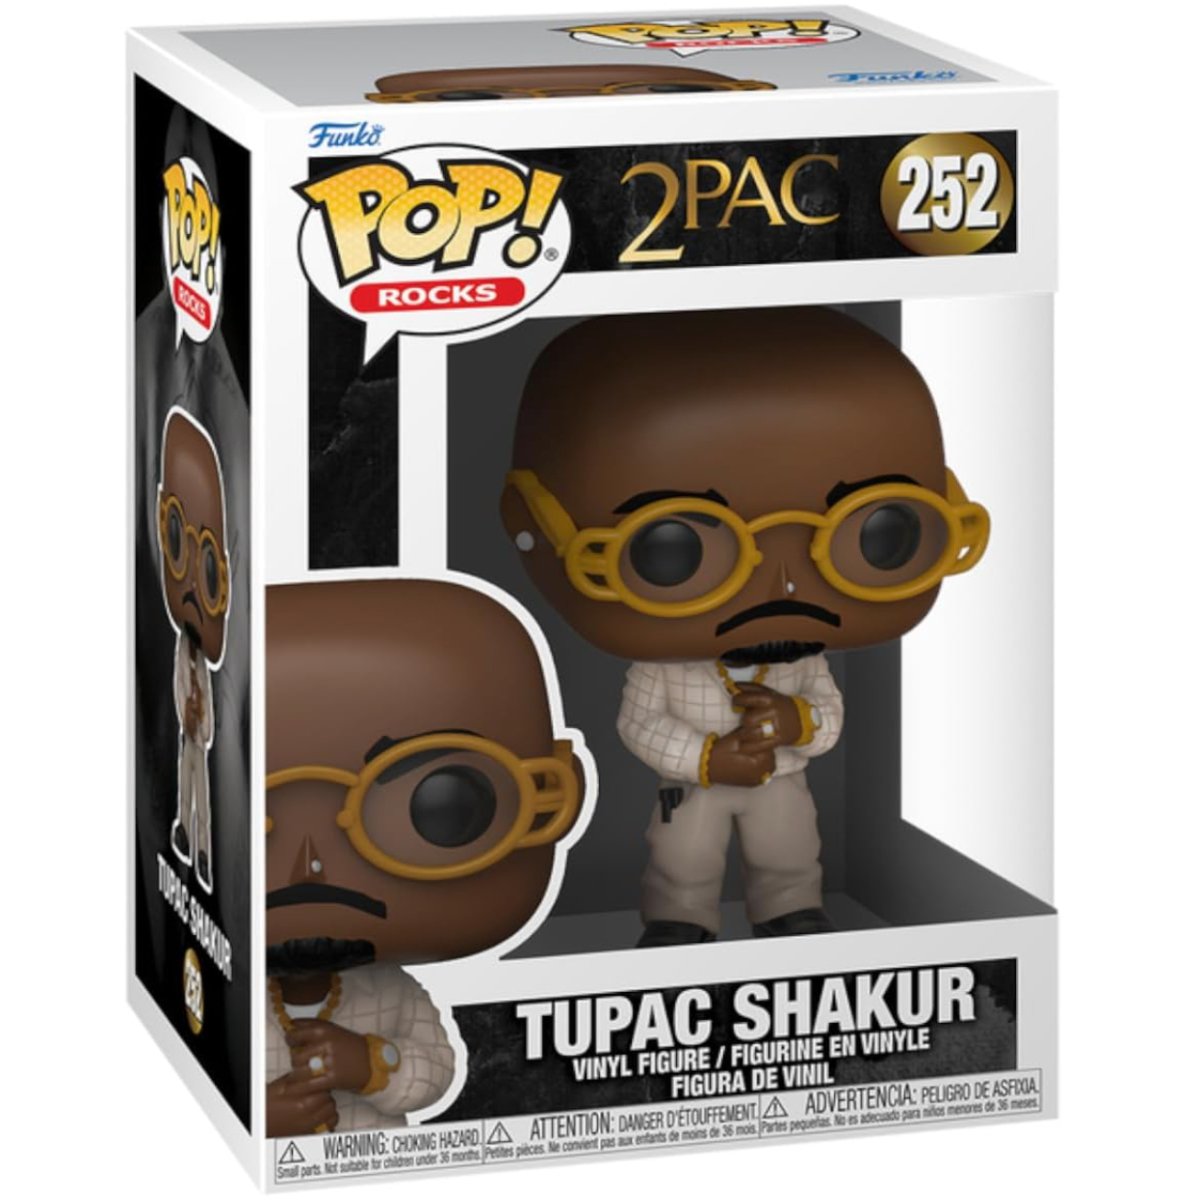 2 Pac - Tupac Shakur #252 - Funko Pop! Vinyl Rocks - Persona Toys